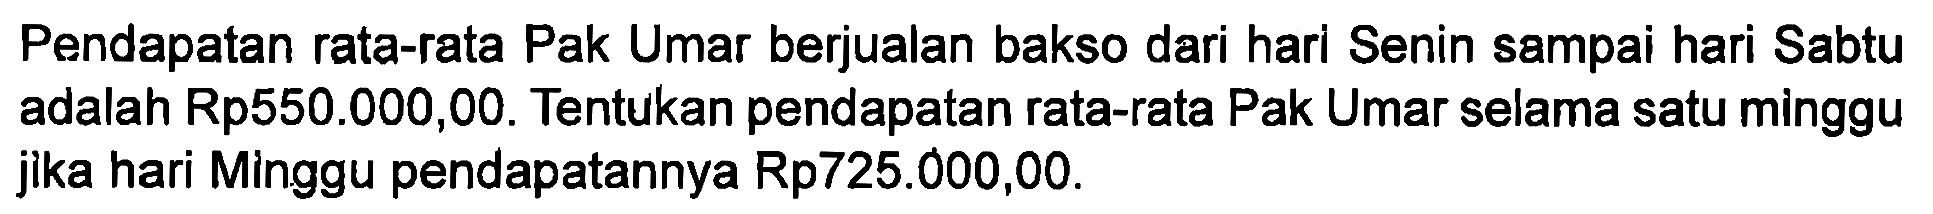 Pendapatan rata-rata Pak Umar berjualan bakso dari hari Senin sampai hari Sabtu adalah Rp550.000,00. Tentukan pendapatan rata-rata Pak Umar selama satu minggu jika hari Minggu pendapatannya Rp725.000,00.